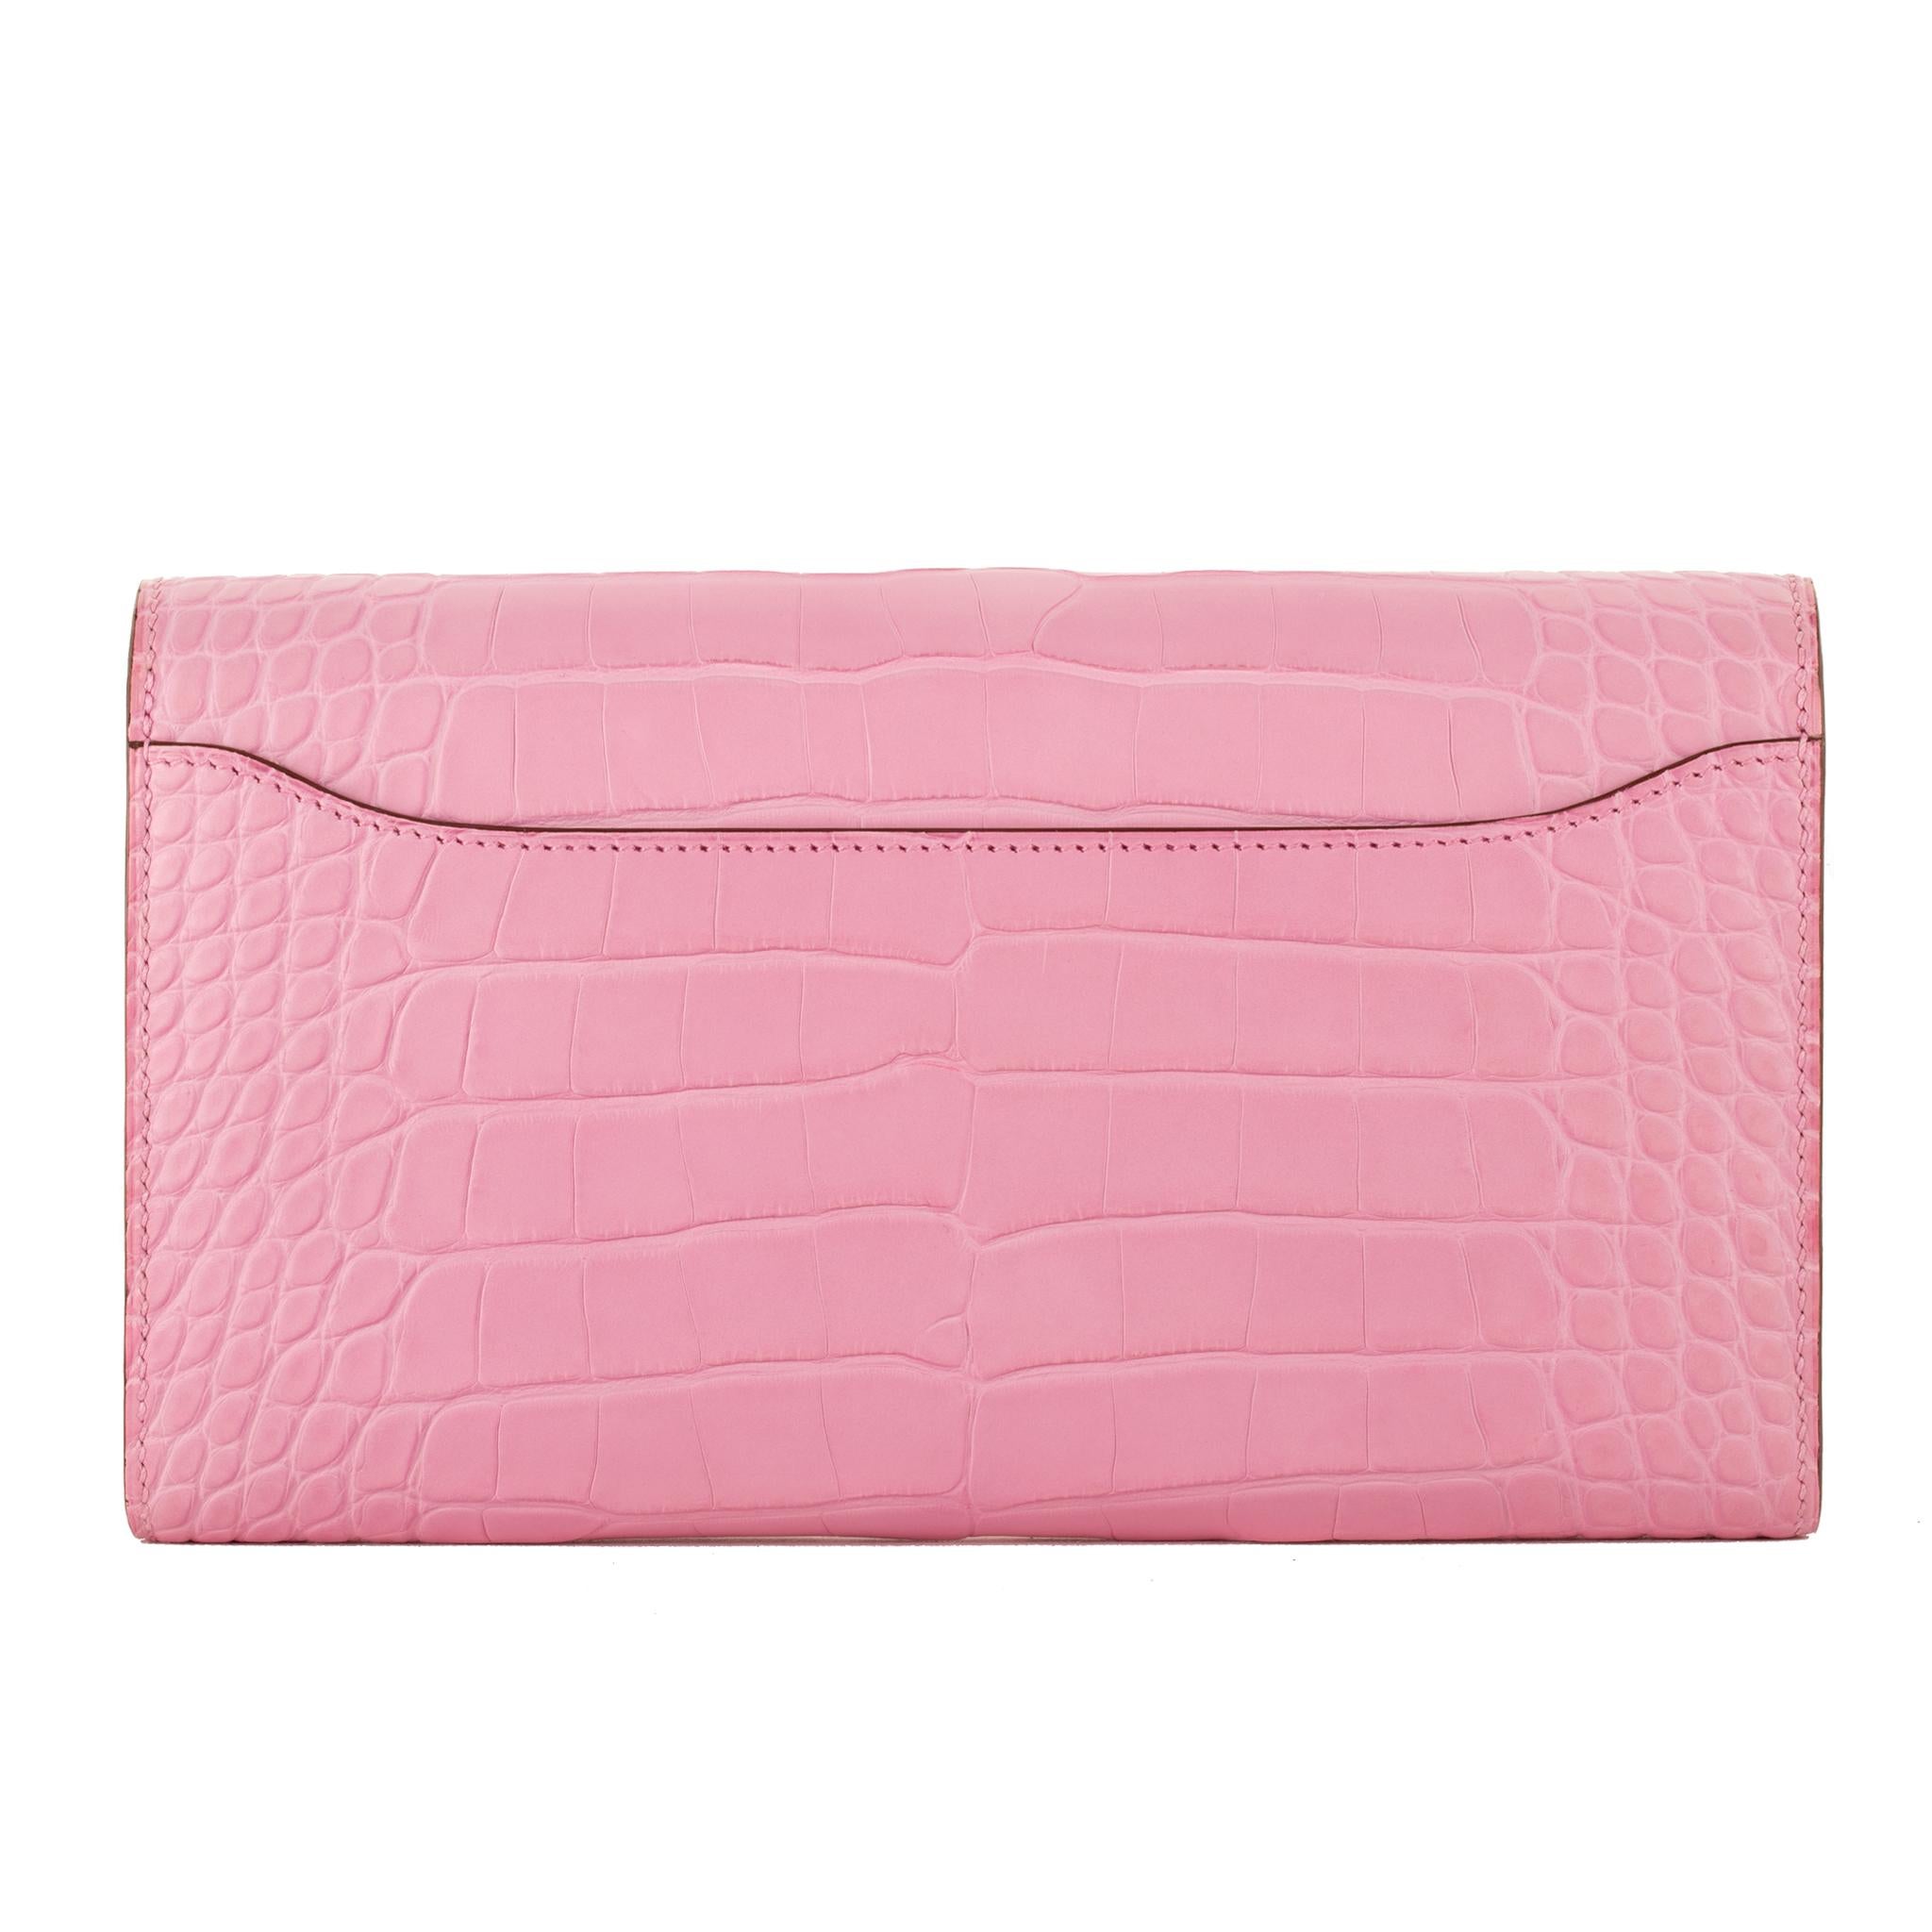 hermes pink wallet